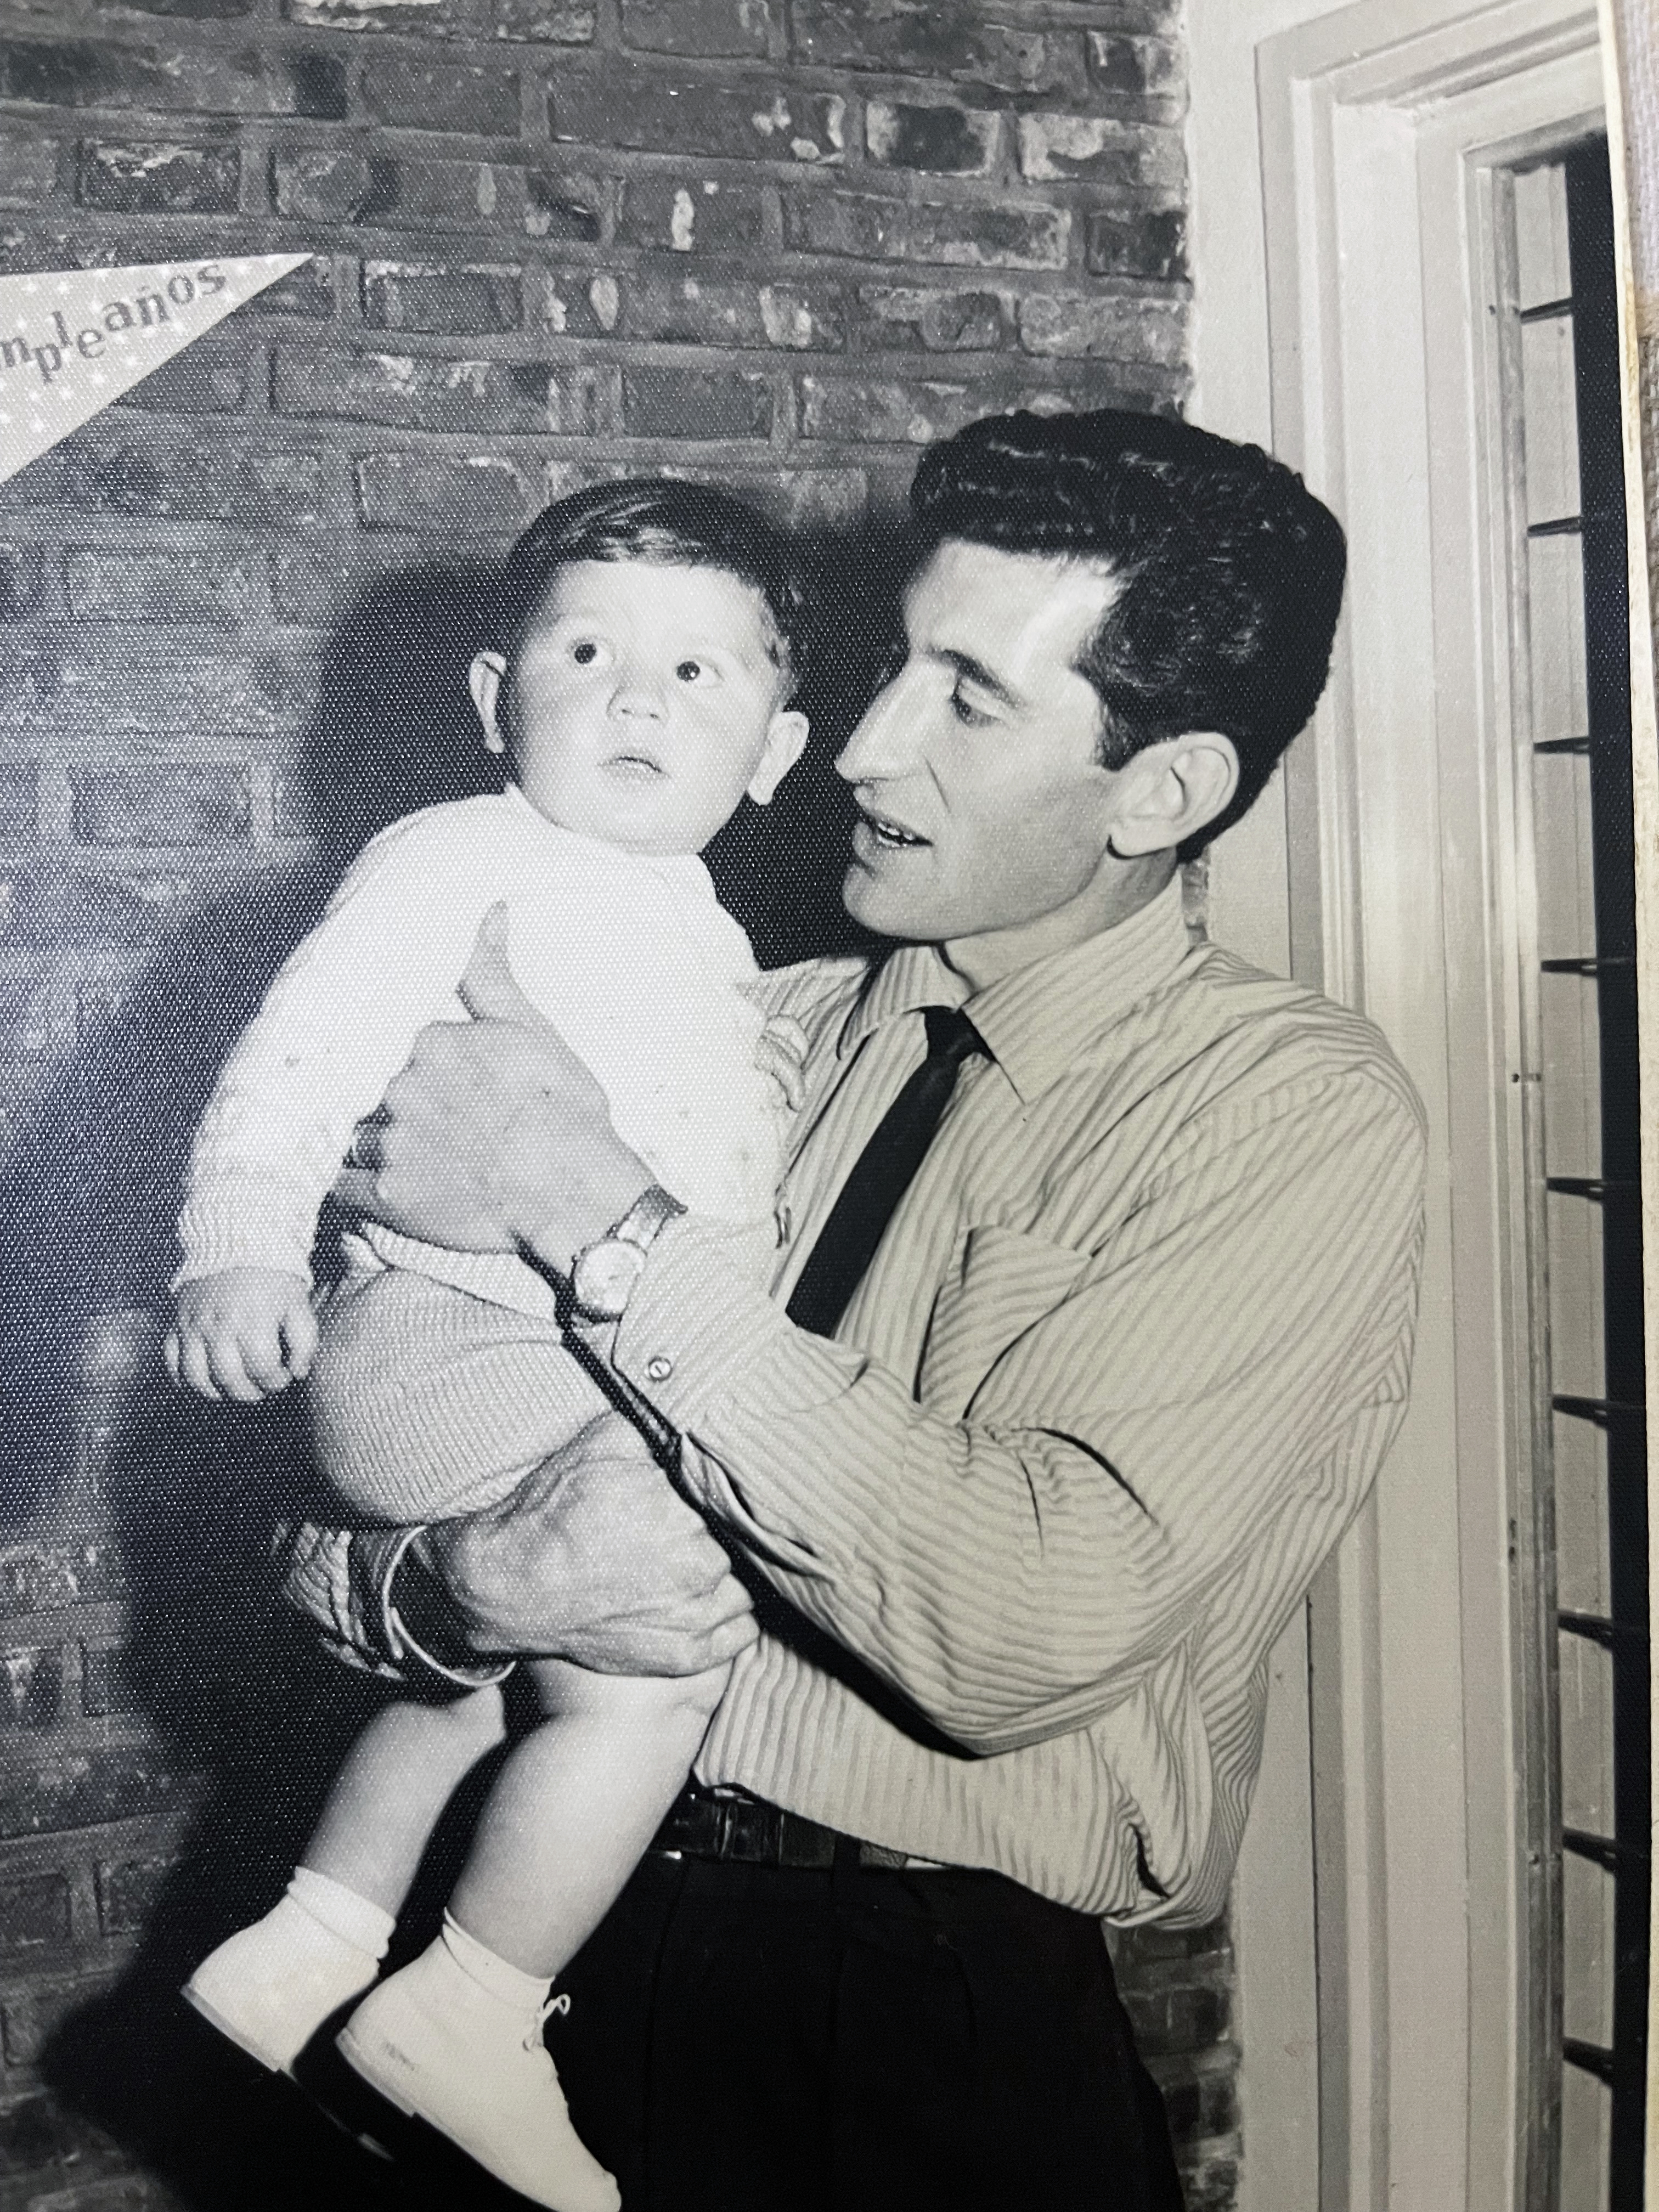 Daniel en brazos de su papá: "Me ayudó muchísimo como persona haber trabajado con mis padres en la pollería", cuenta Ricart (Foto: Gentileza Daniel Ricart)